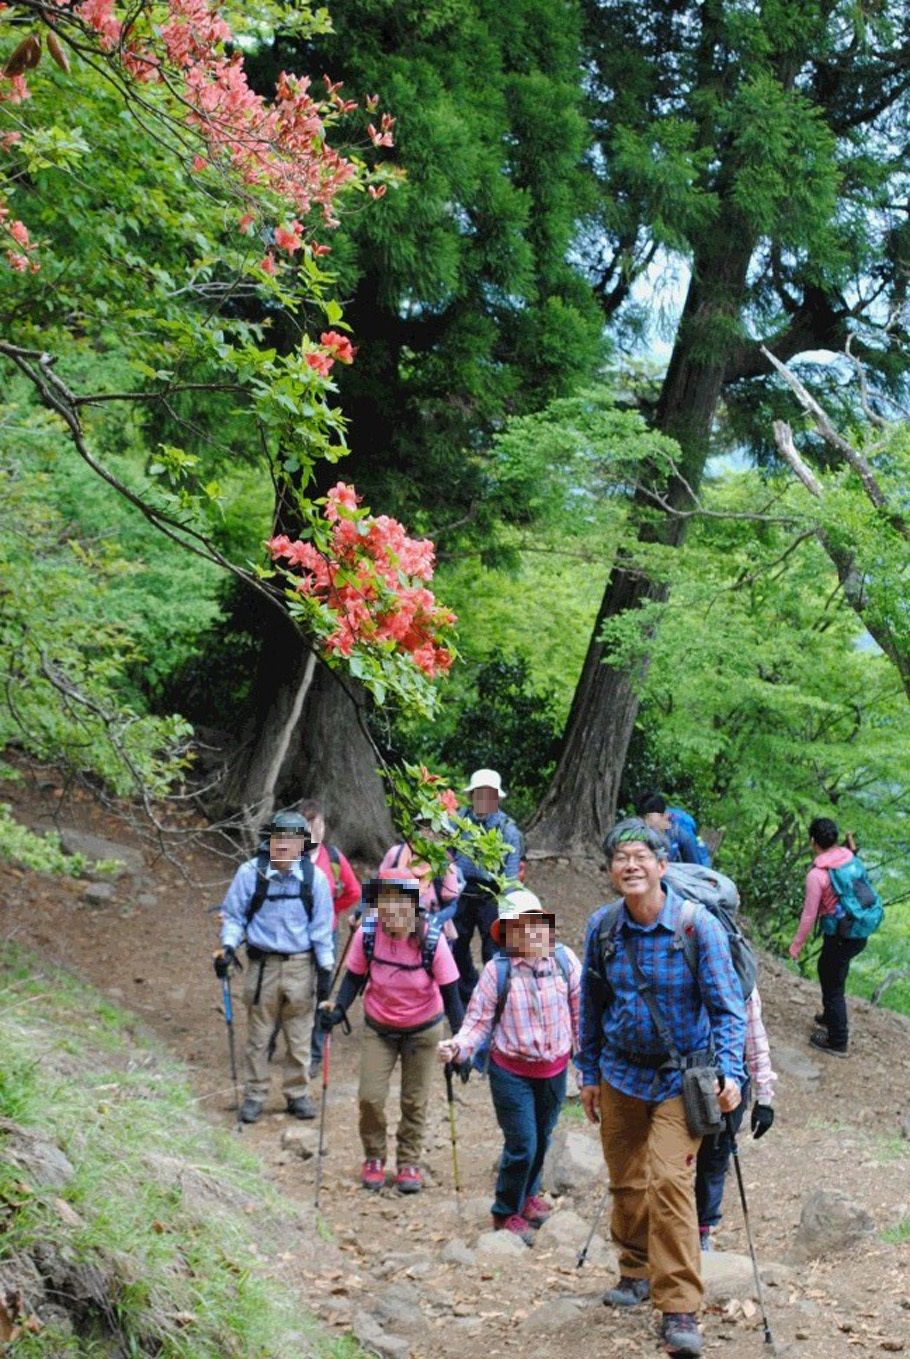 ツツジの咲く登山道を毎日新聞旅行の一行が歩く。先頭はテレビなどで活躍している太田昭彦山岳ガイド